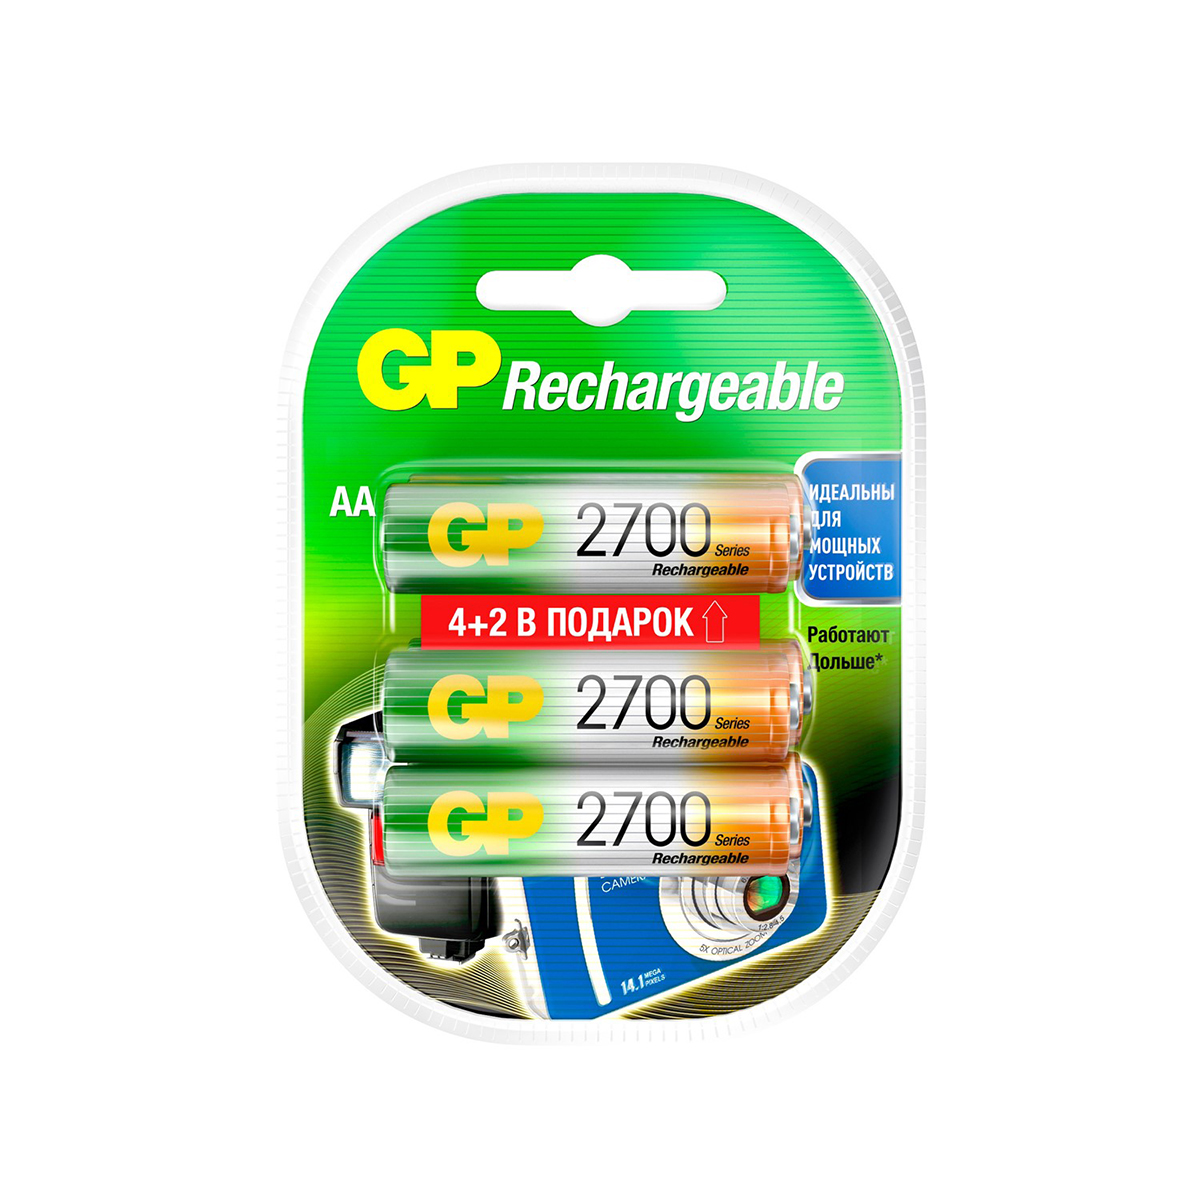 Аккумулятор gp rechargeable 270aahc4/2-2cr6  тип аа, 2700 мач (6 шт. в блистере) (1/6/60)